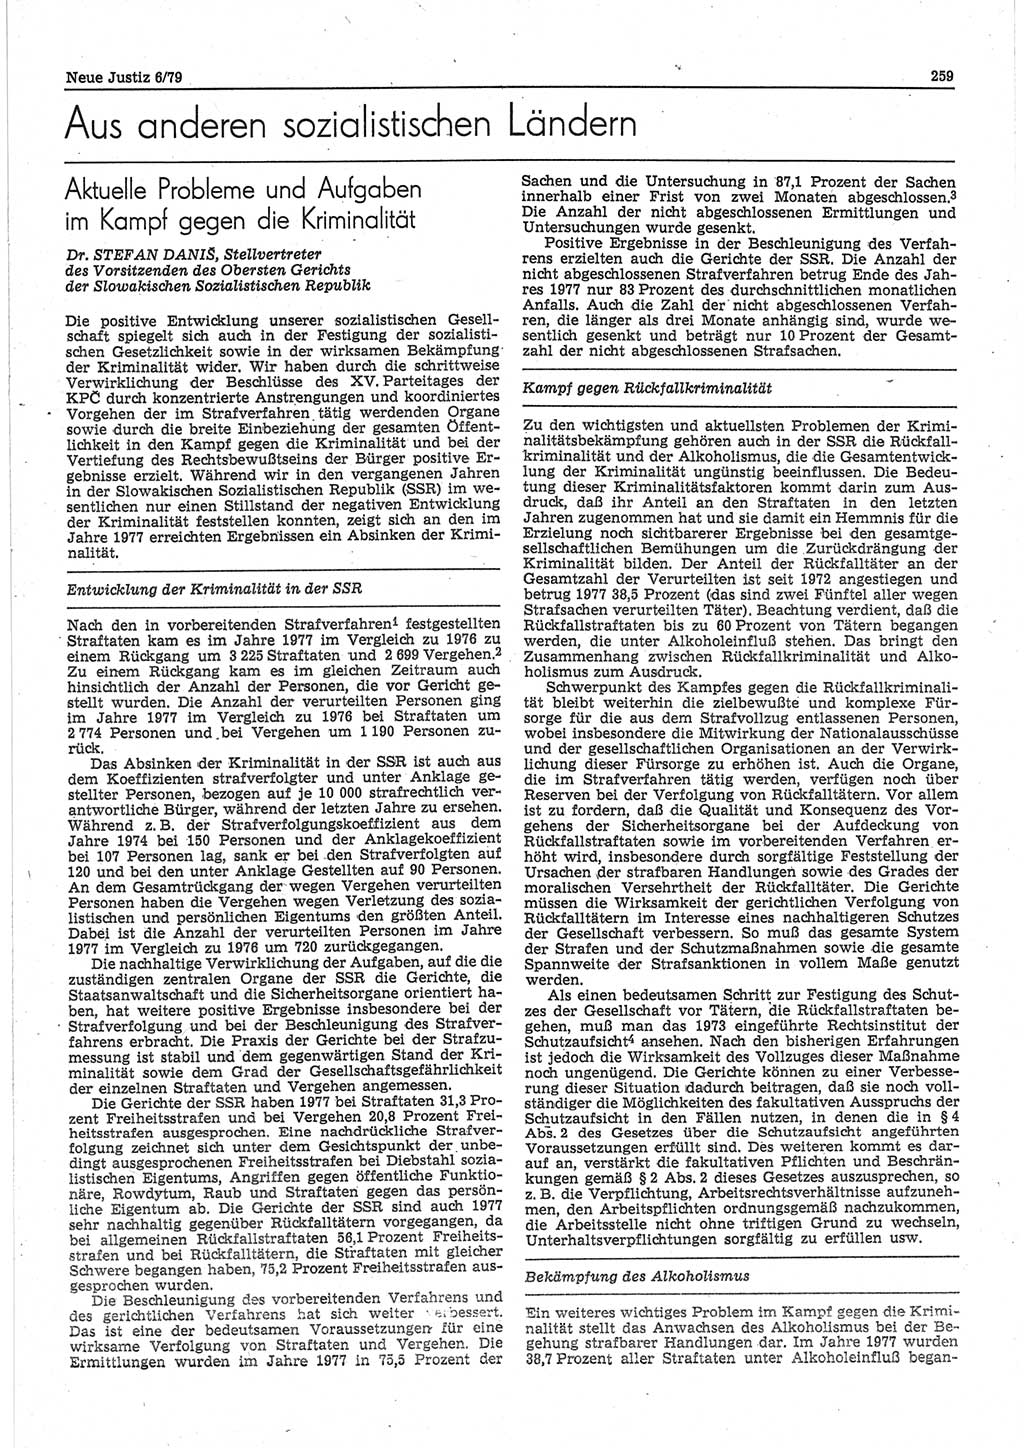 Neue Justiz (NJ), Zeitschrift für sozialistisches Recht und Gesetzlichkeit [Deutsche Demokratische Republik (DDR)], 33. Jahrgang 1979, Seite 259 (NJ DDR 1979, S. 259)